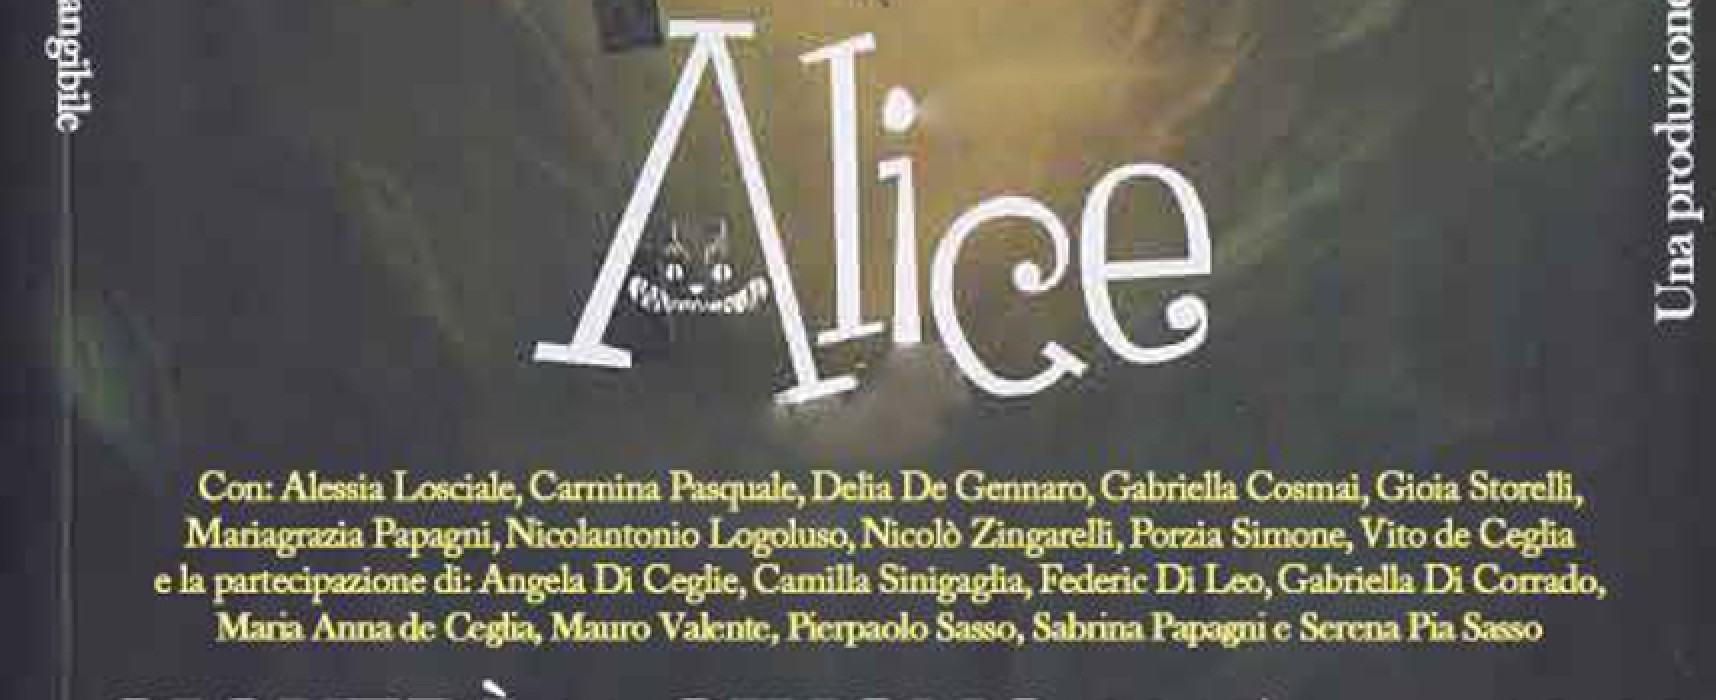 “Alice e Racconti naturali”, la Compagnia Aurea torna in scena giovedì 11 giugno